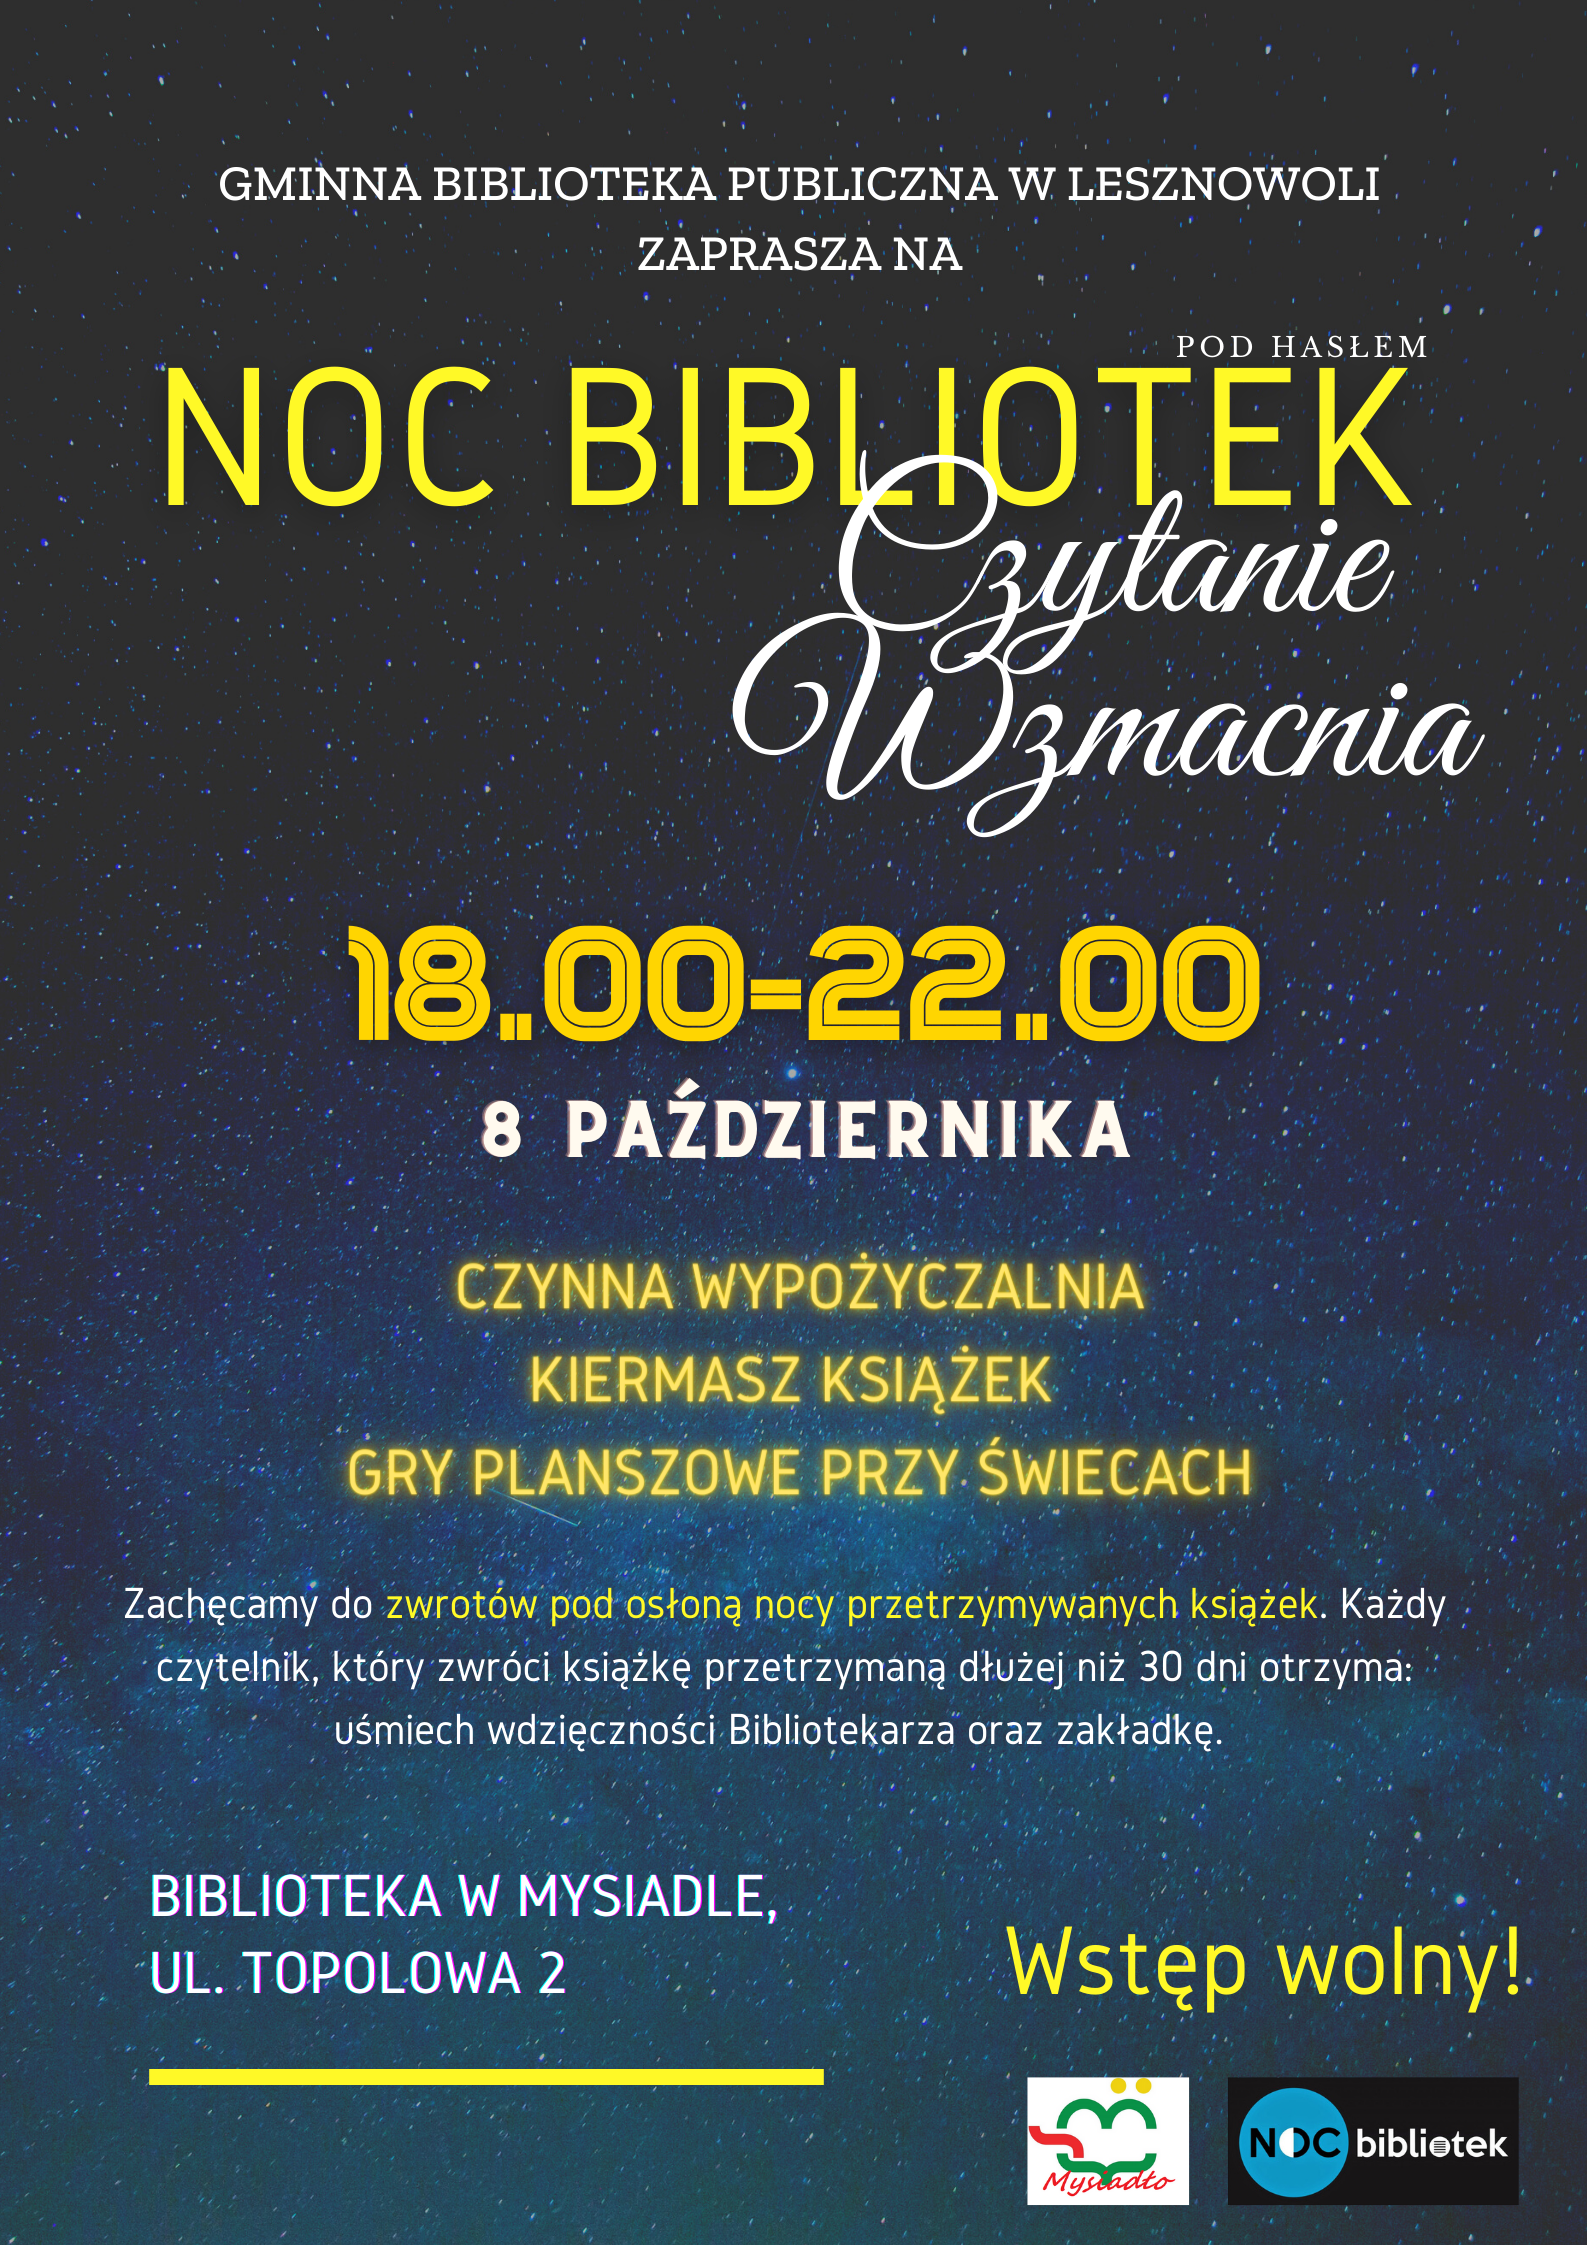 You are currently viewing Czytanie Wzmacnia czyli Noc Bibliotek 2021